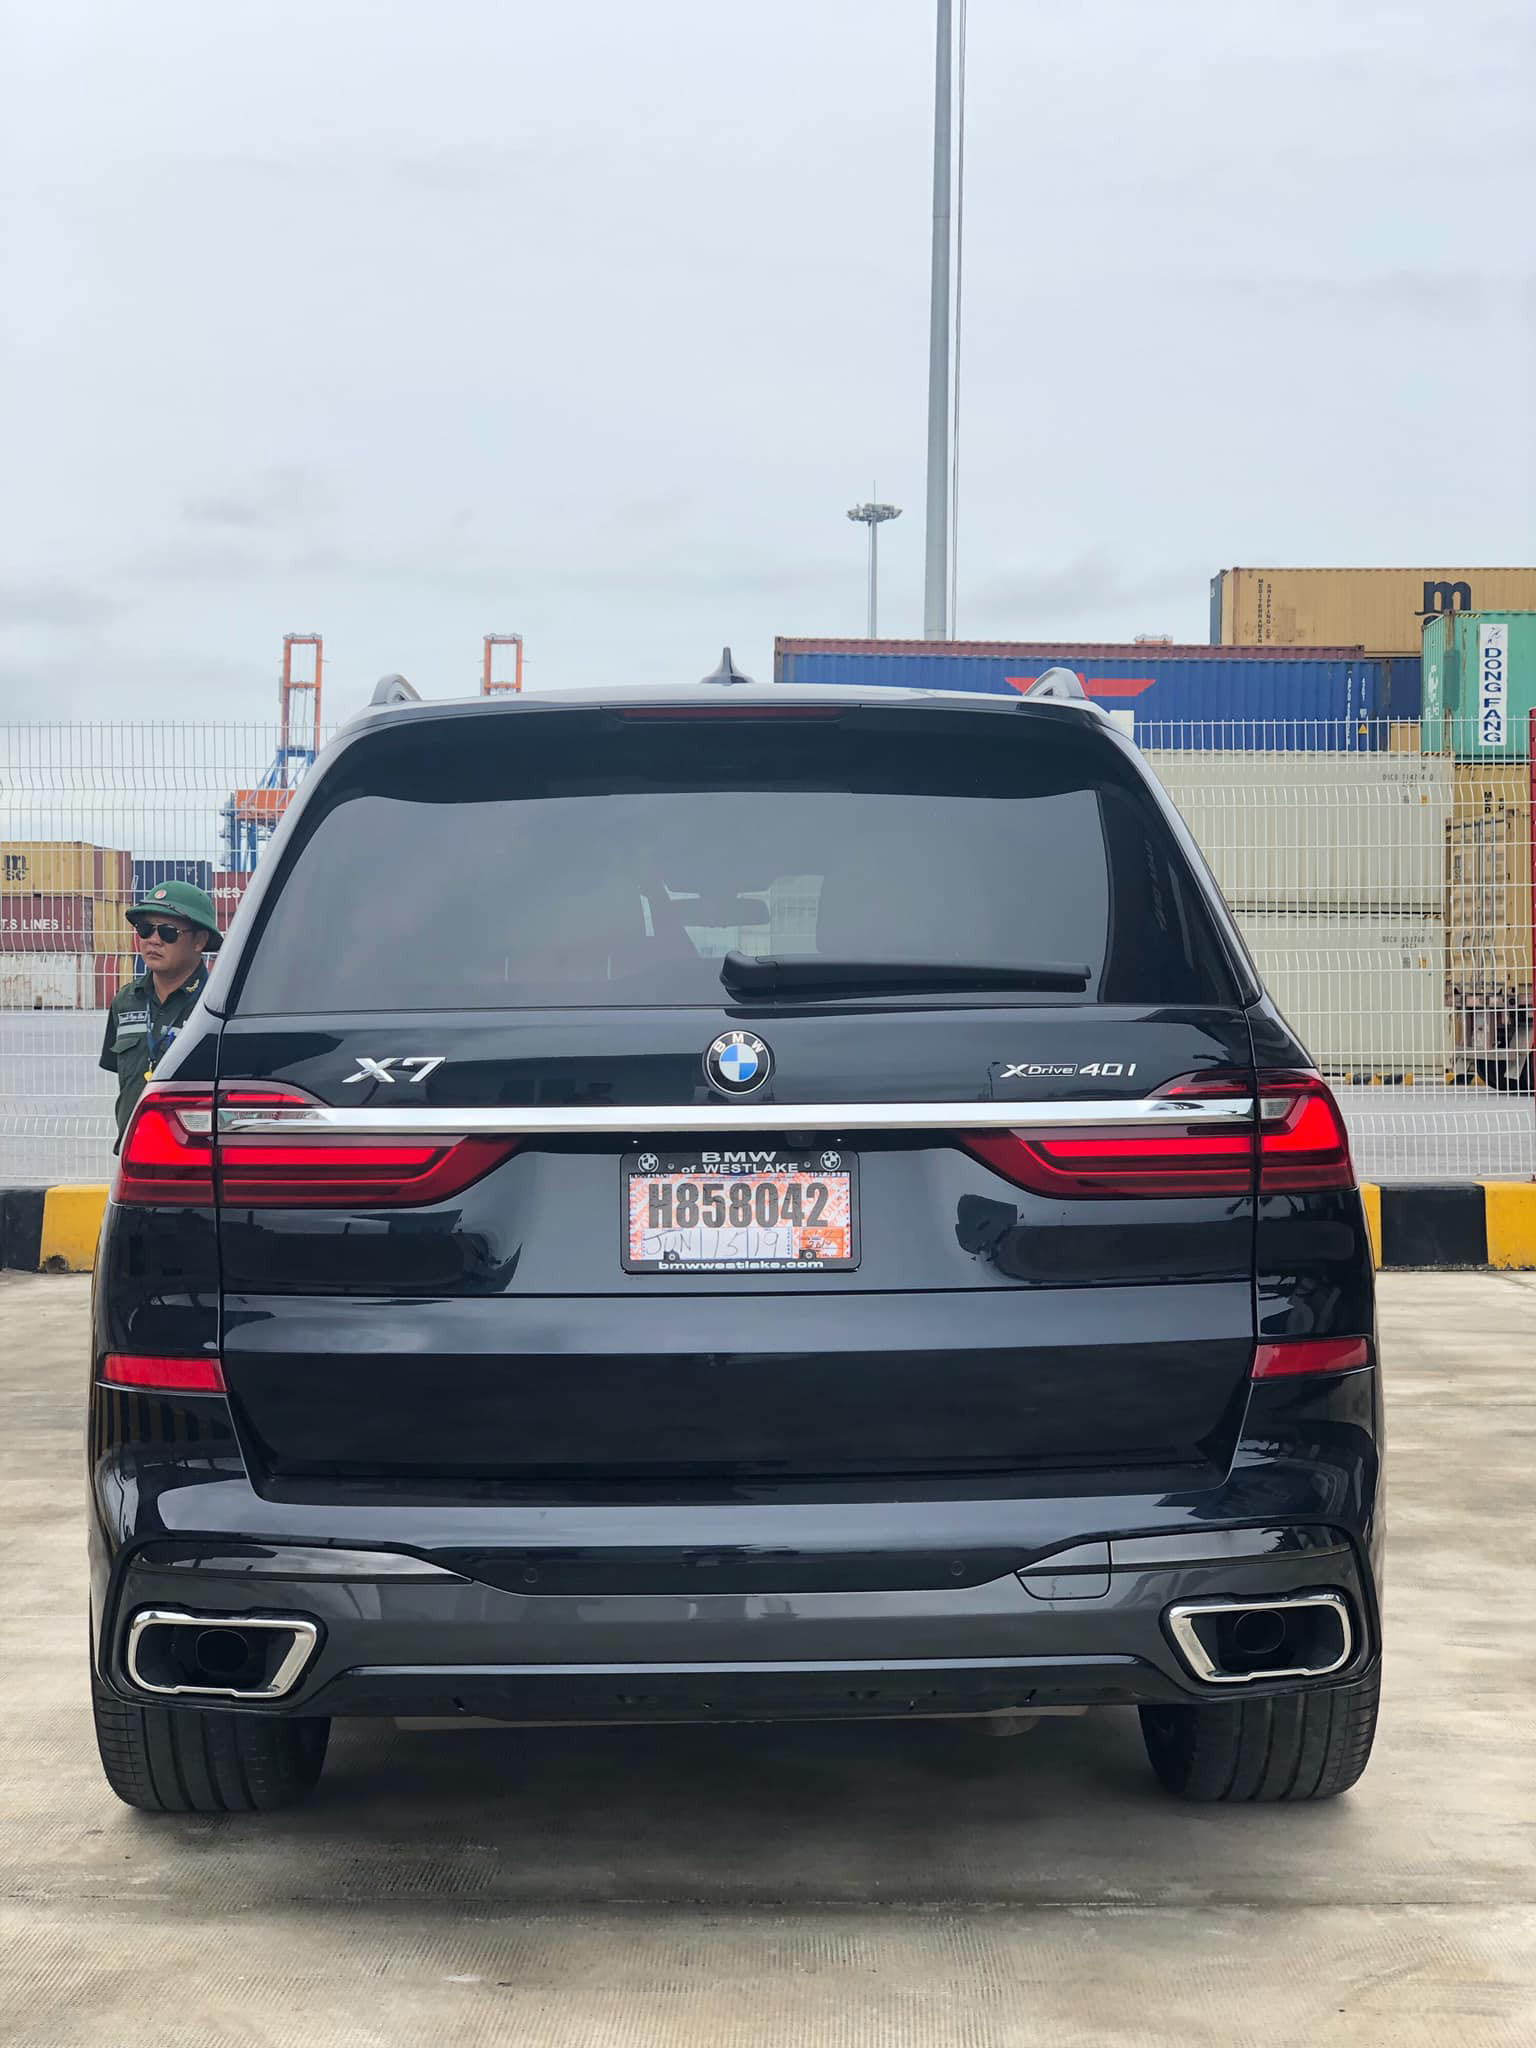 BMW X7 2019 đầu tiên về Việt Nam, giá khoảng 7 tỷ đồng 3a